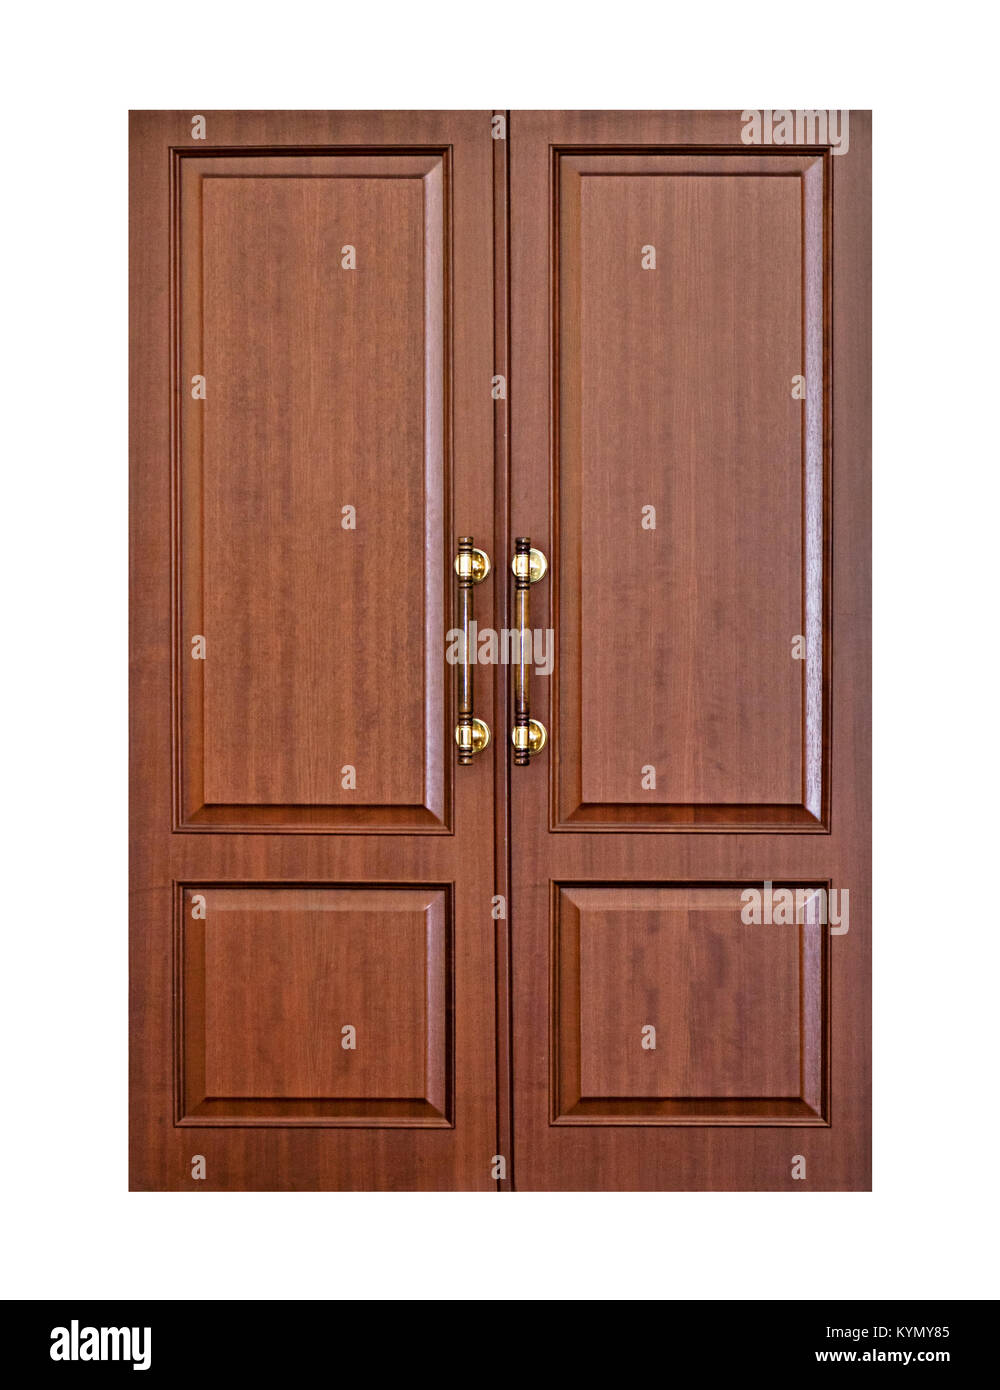 Modern wooden door Stock Photo